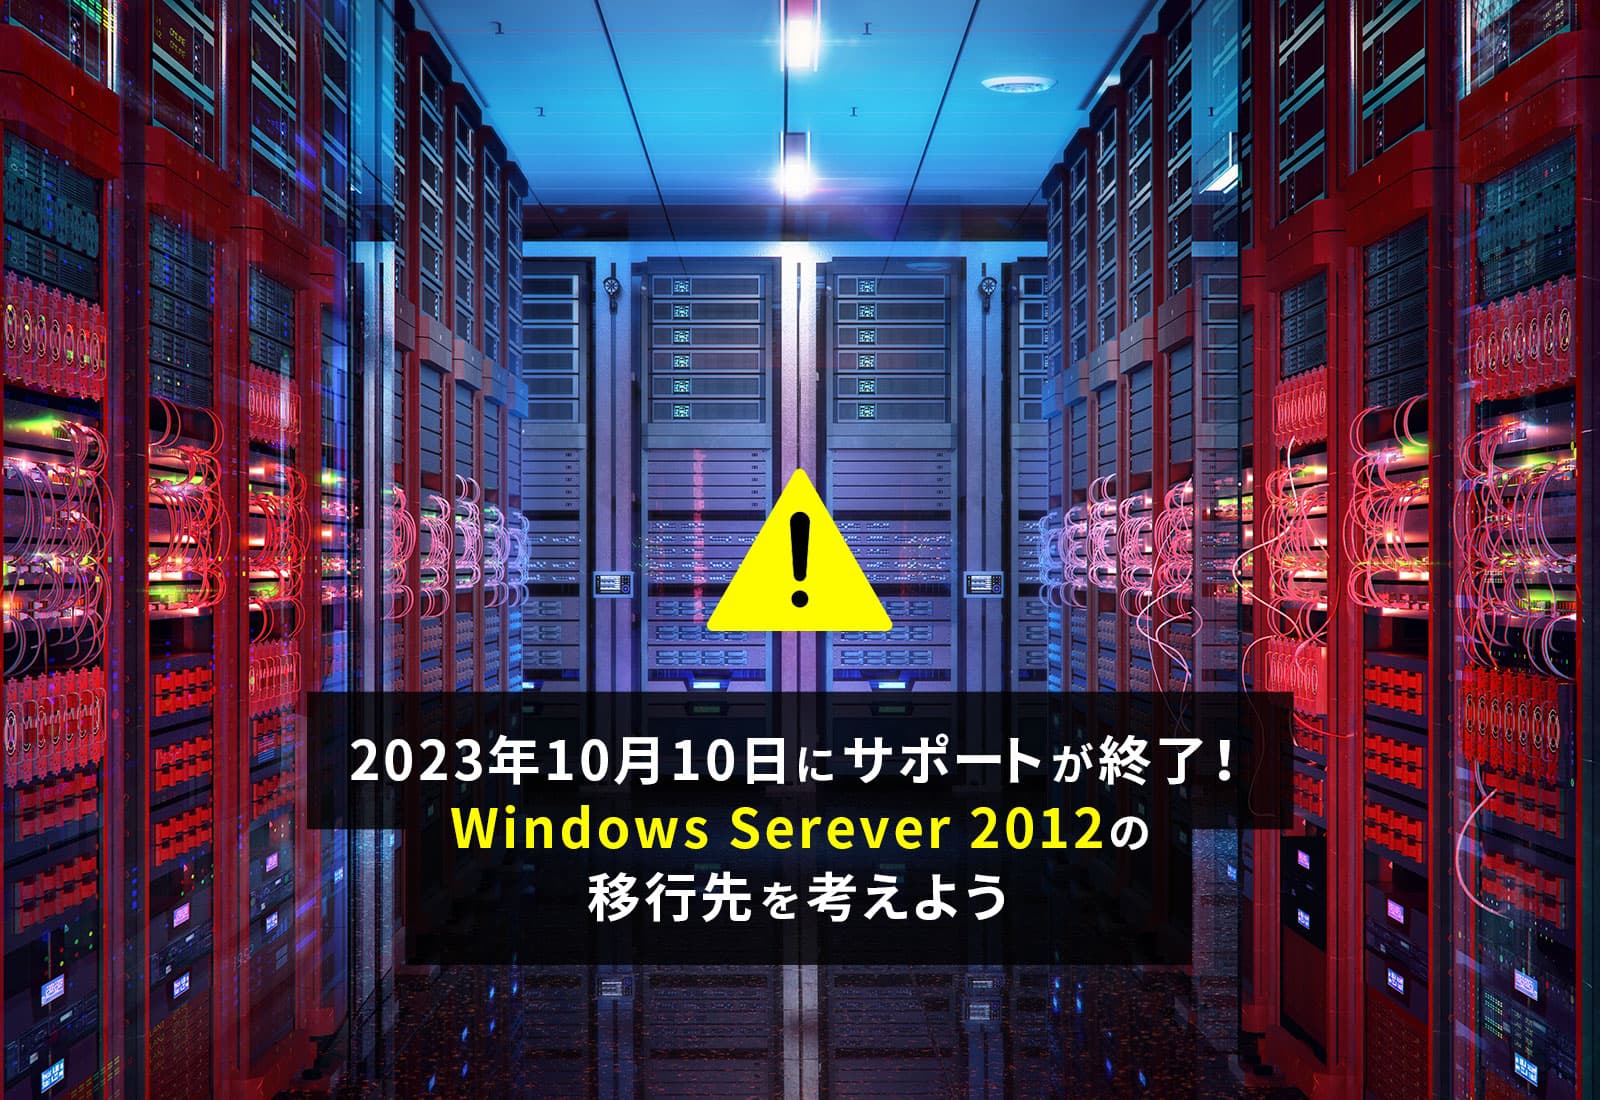 2023年10月10日にサポートが終了！Windows Serever 2012の移行先を考えよう